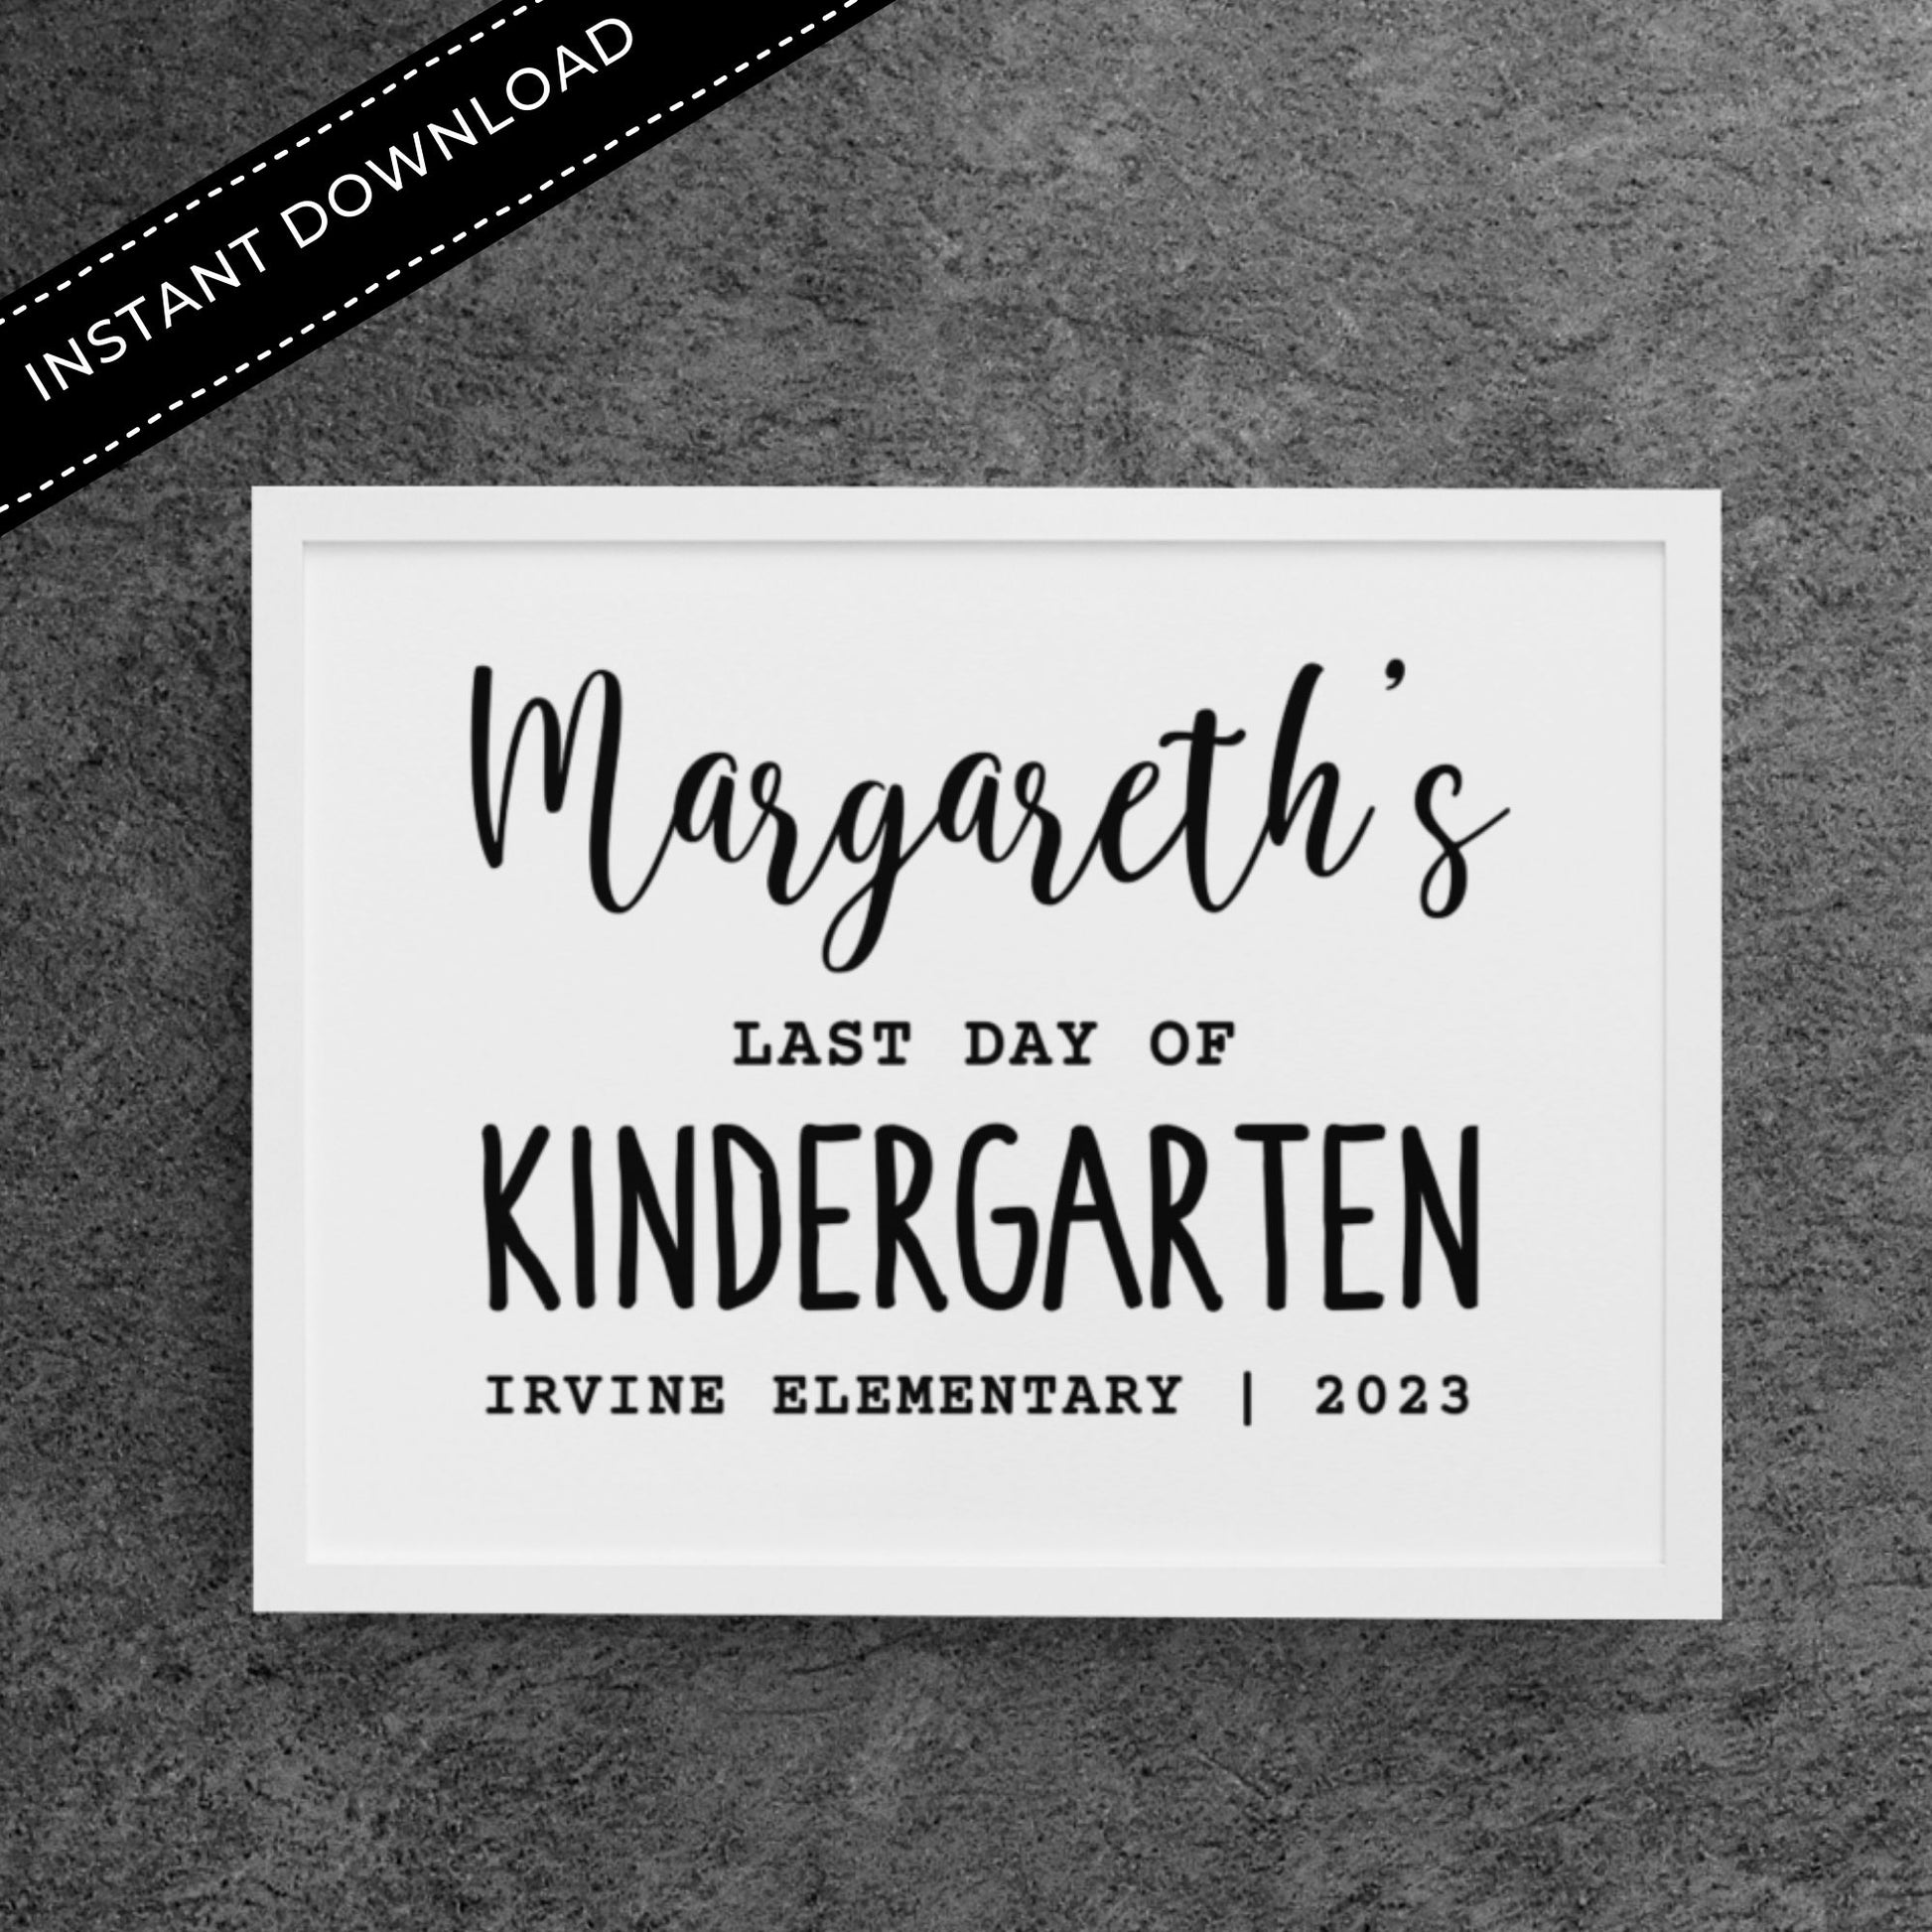 Last Day of Kindergarten Sign Template 8x10